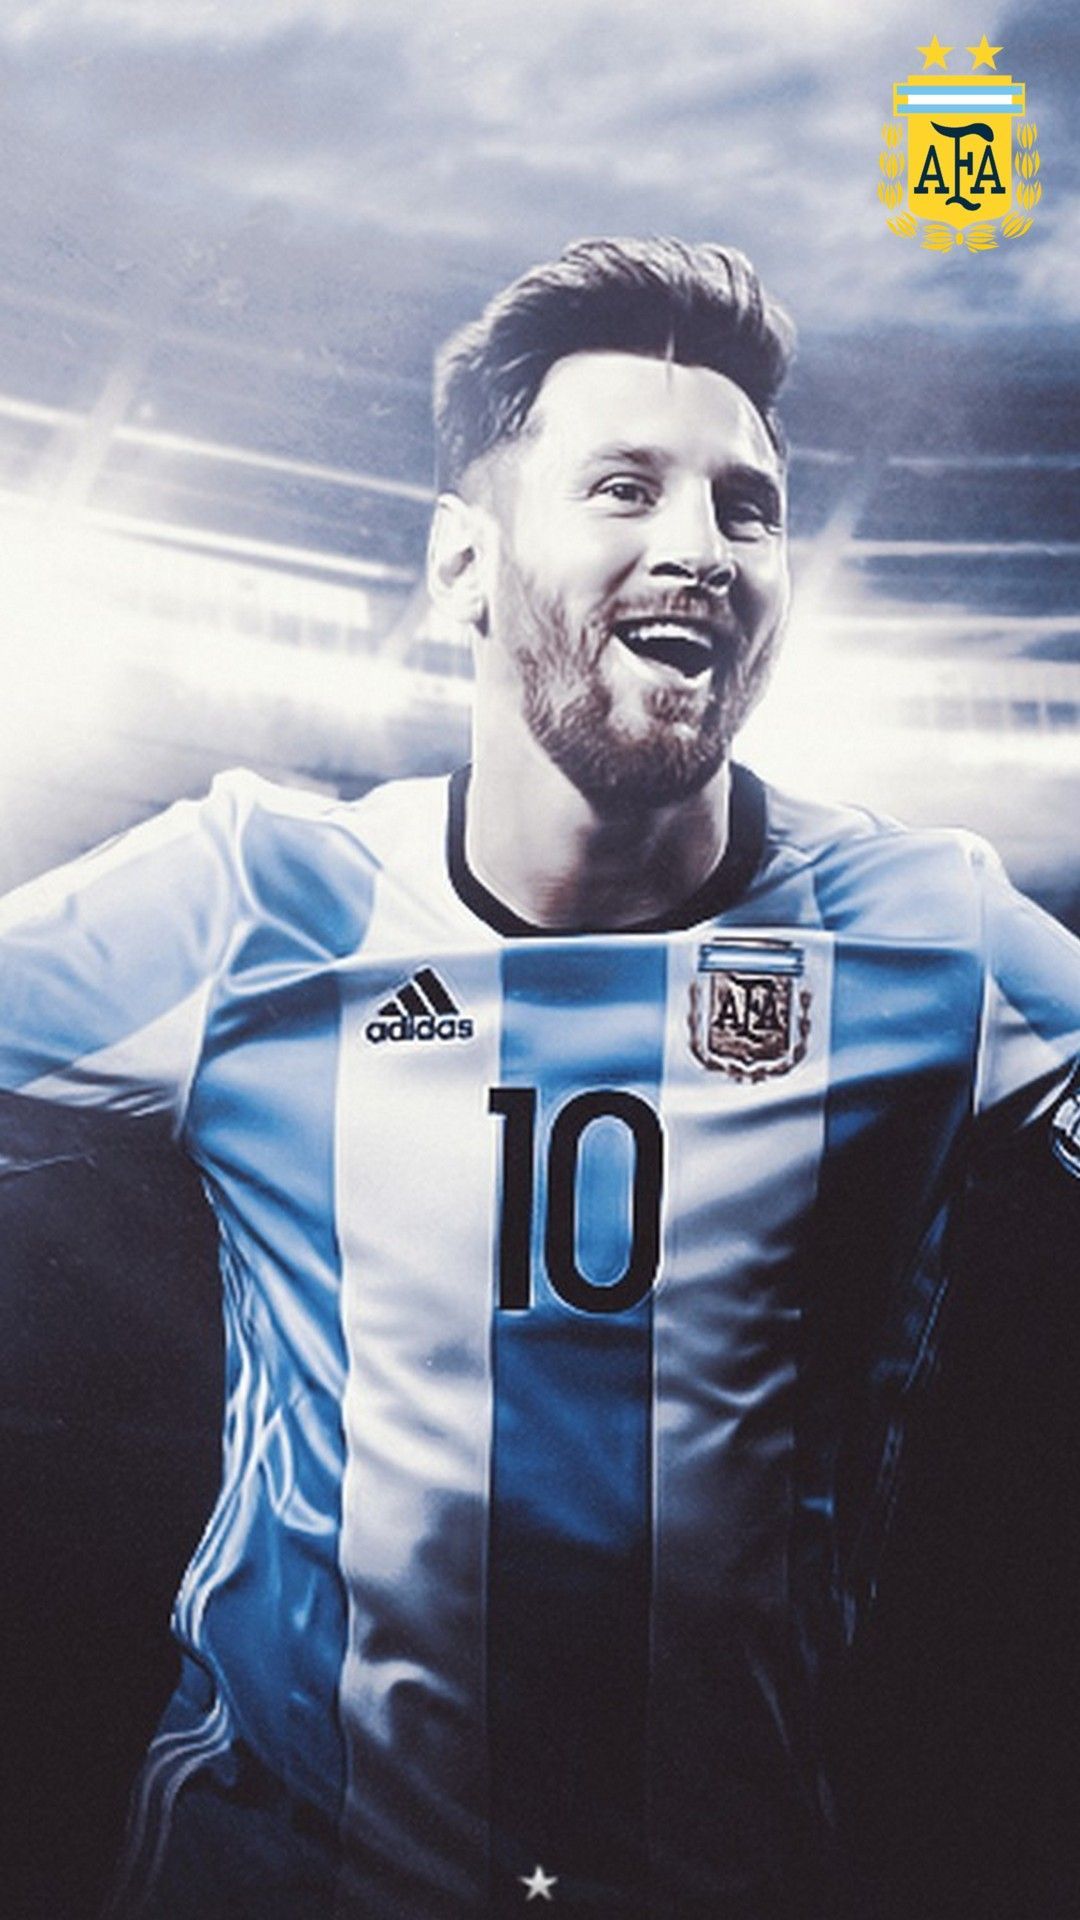 Những hình nền Messi tuyệt vời chắc chắn sẽ làm hài lòng những fan hâm mộ bóng đá. Những hình ảnh này gợi lên sự mạnh mẽ và tài năng của Messi trên sân cỏ, đồng thời tạo ra sự khác biệt, ấn tượng cho điện thoại của bạn.